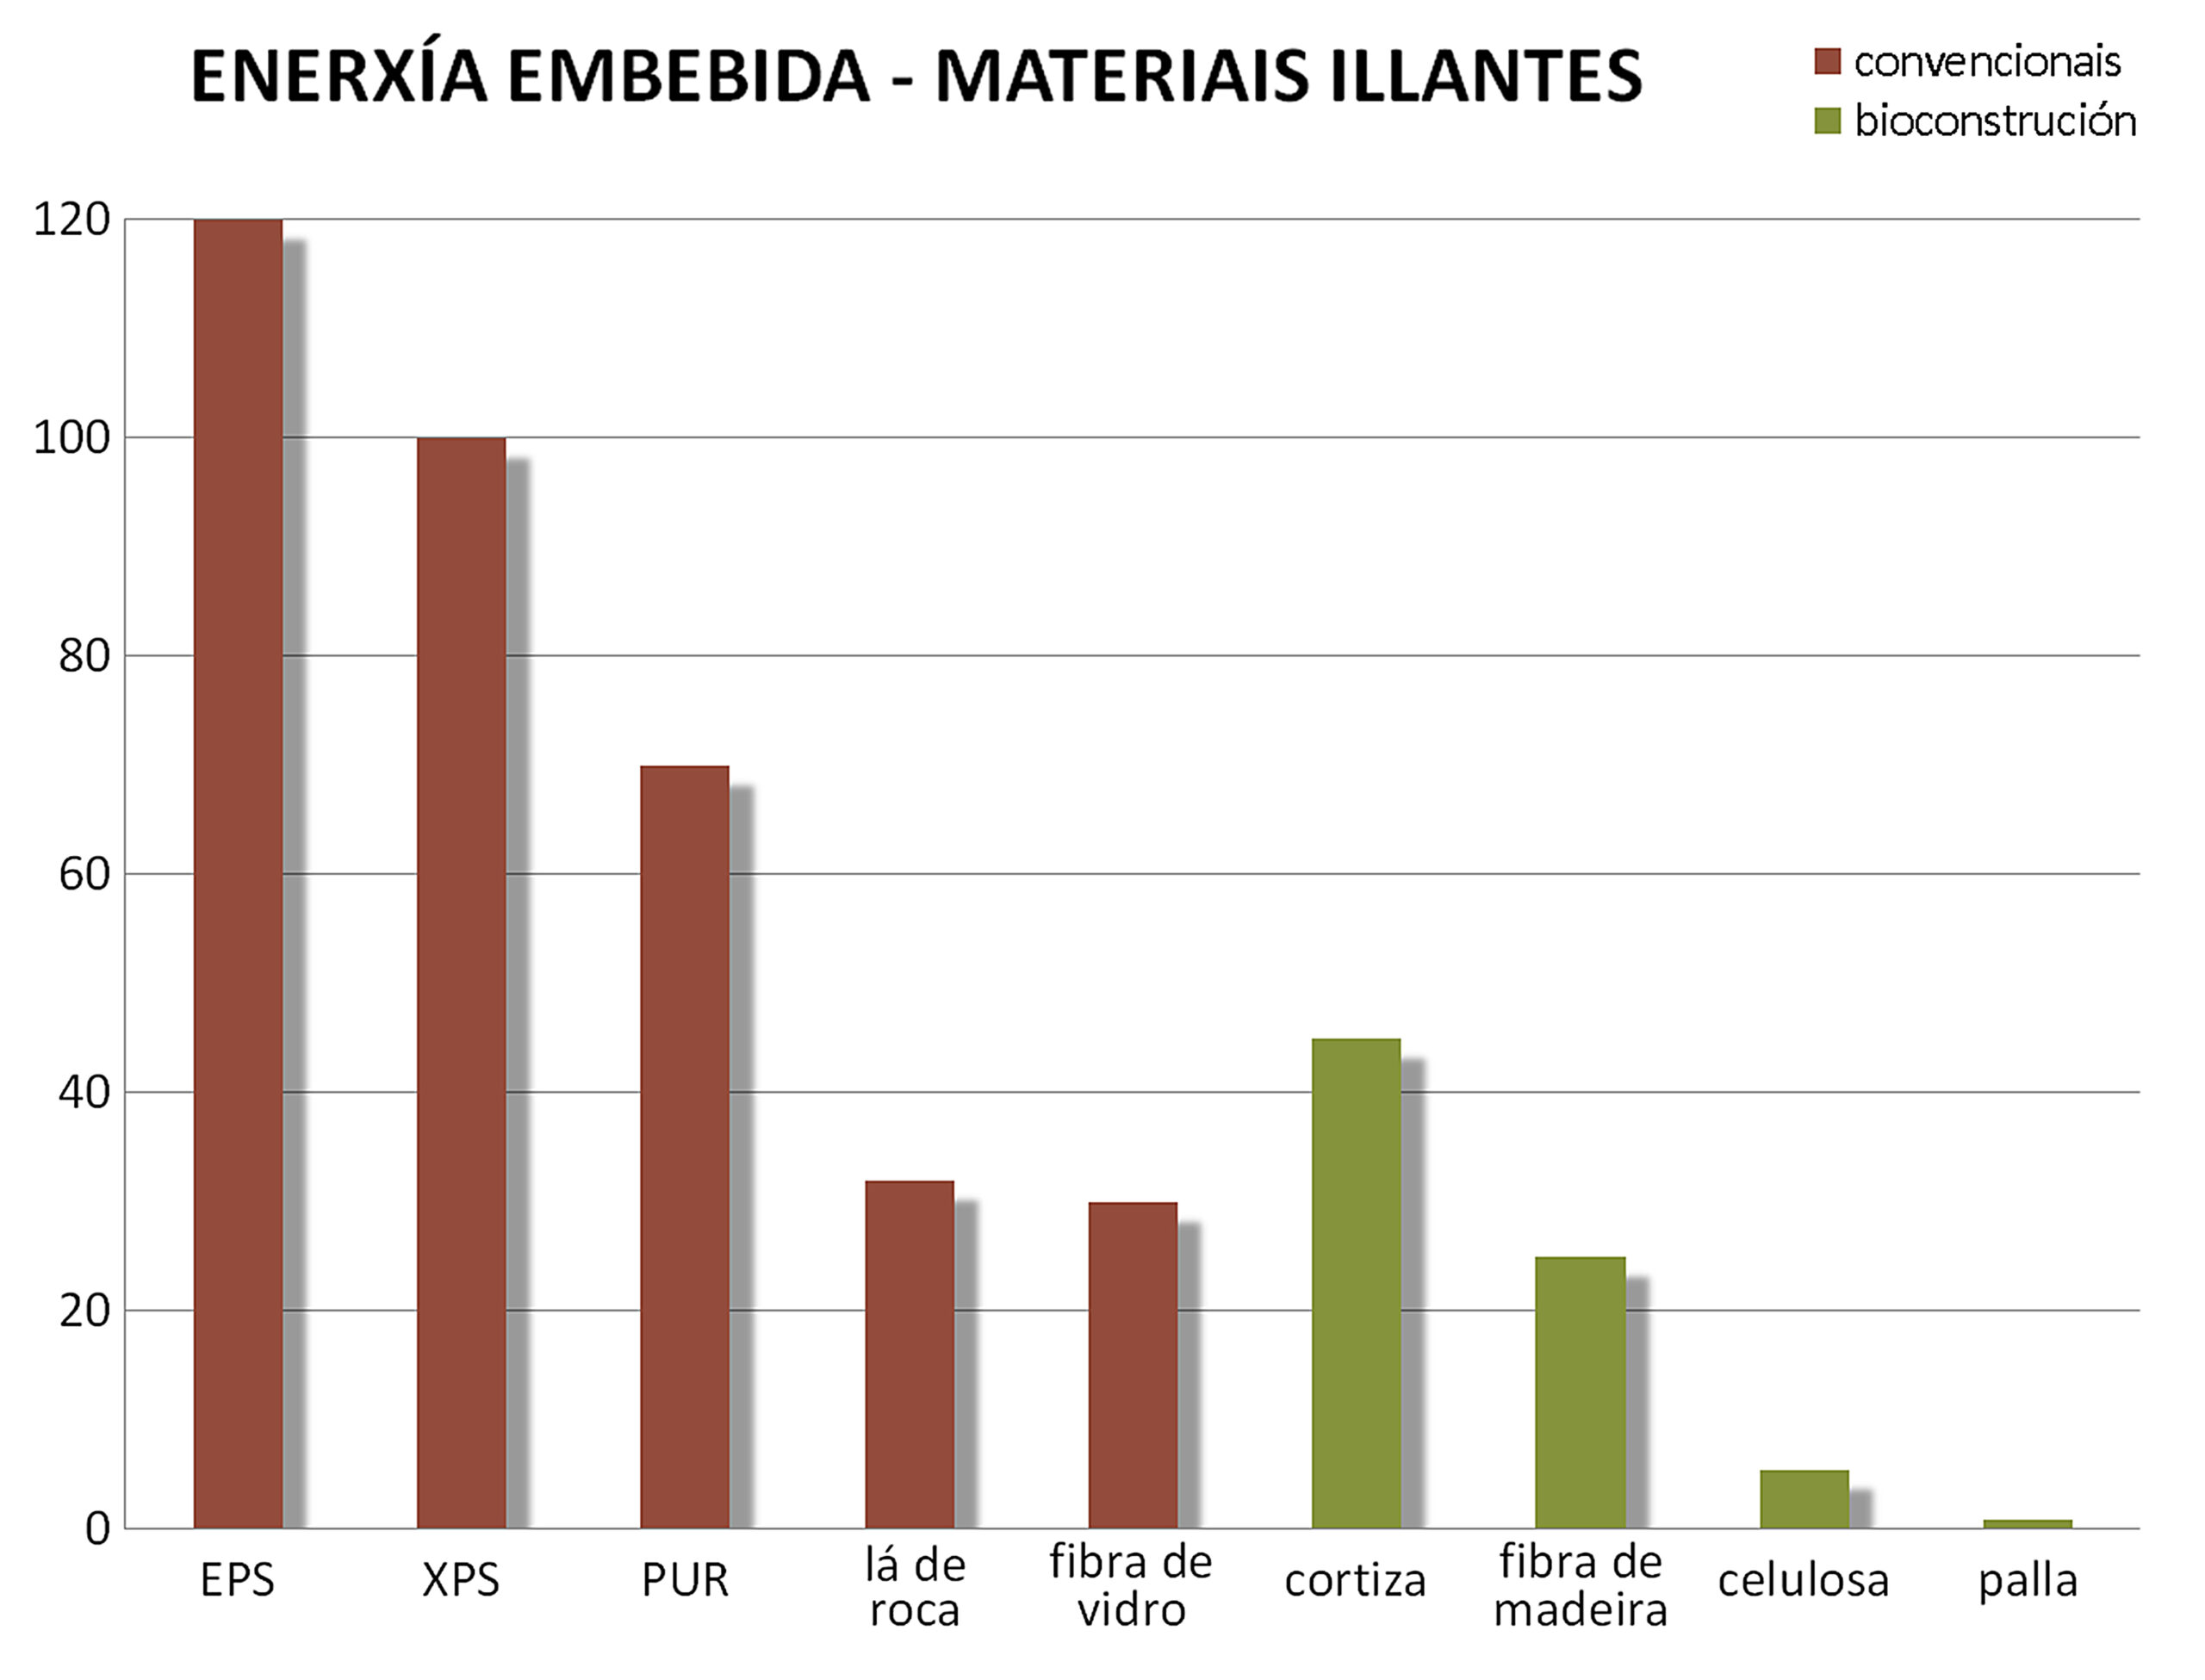 Gráfico de energía embebida por materiales aislantes